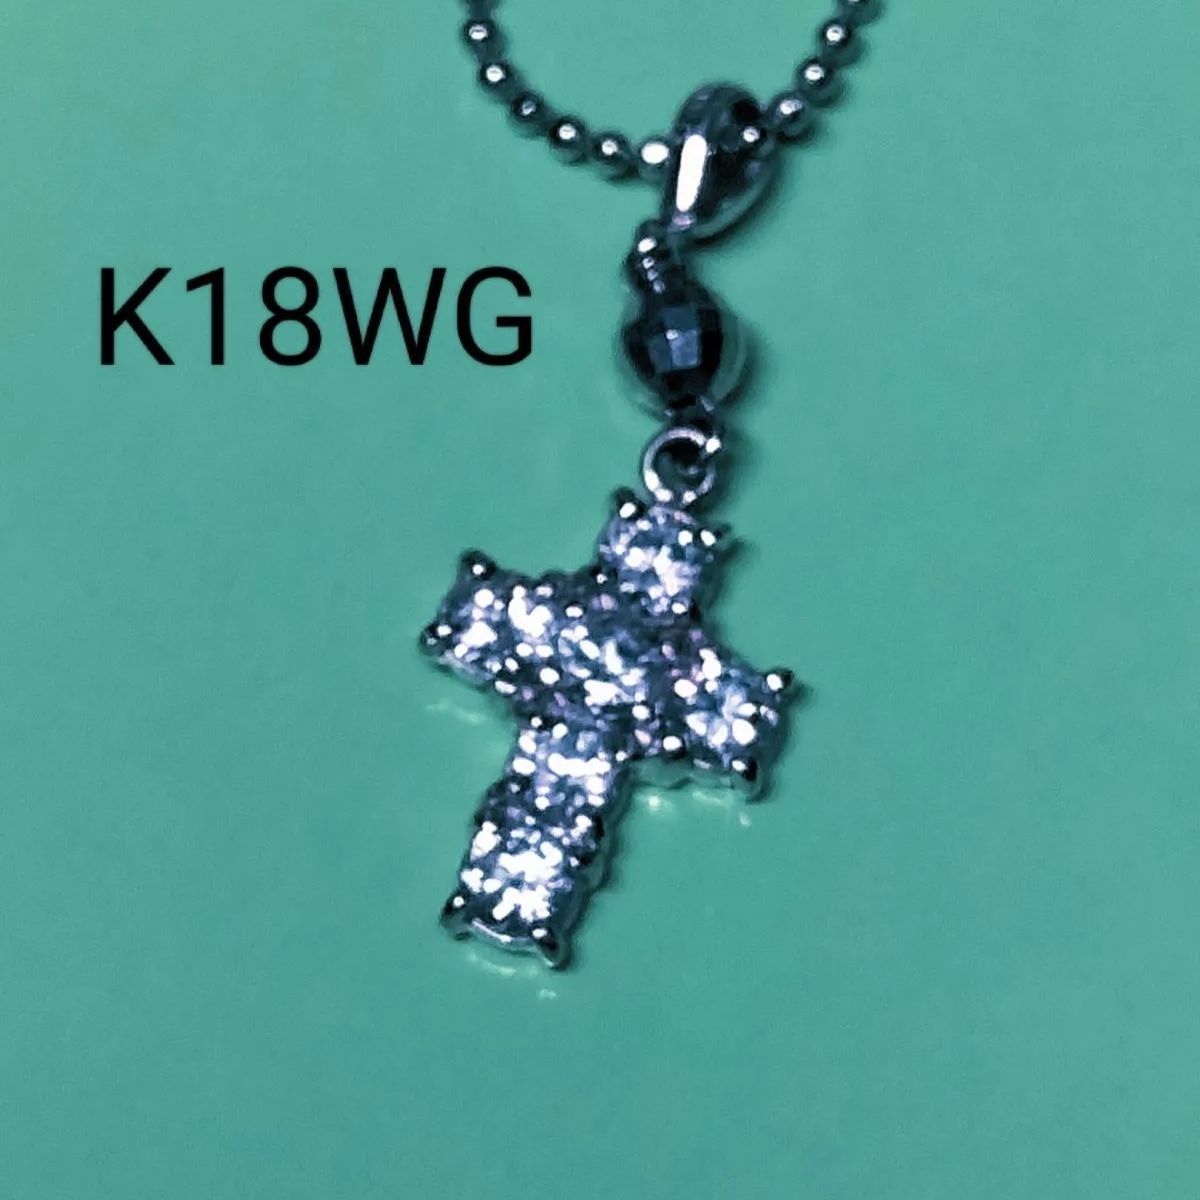 新品ネックレス K18WGキュービックダイヤネックレス キュービック